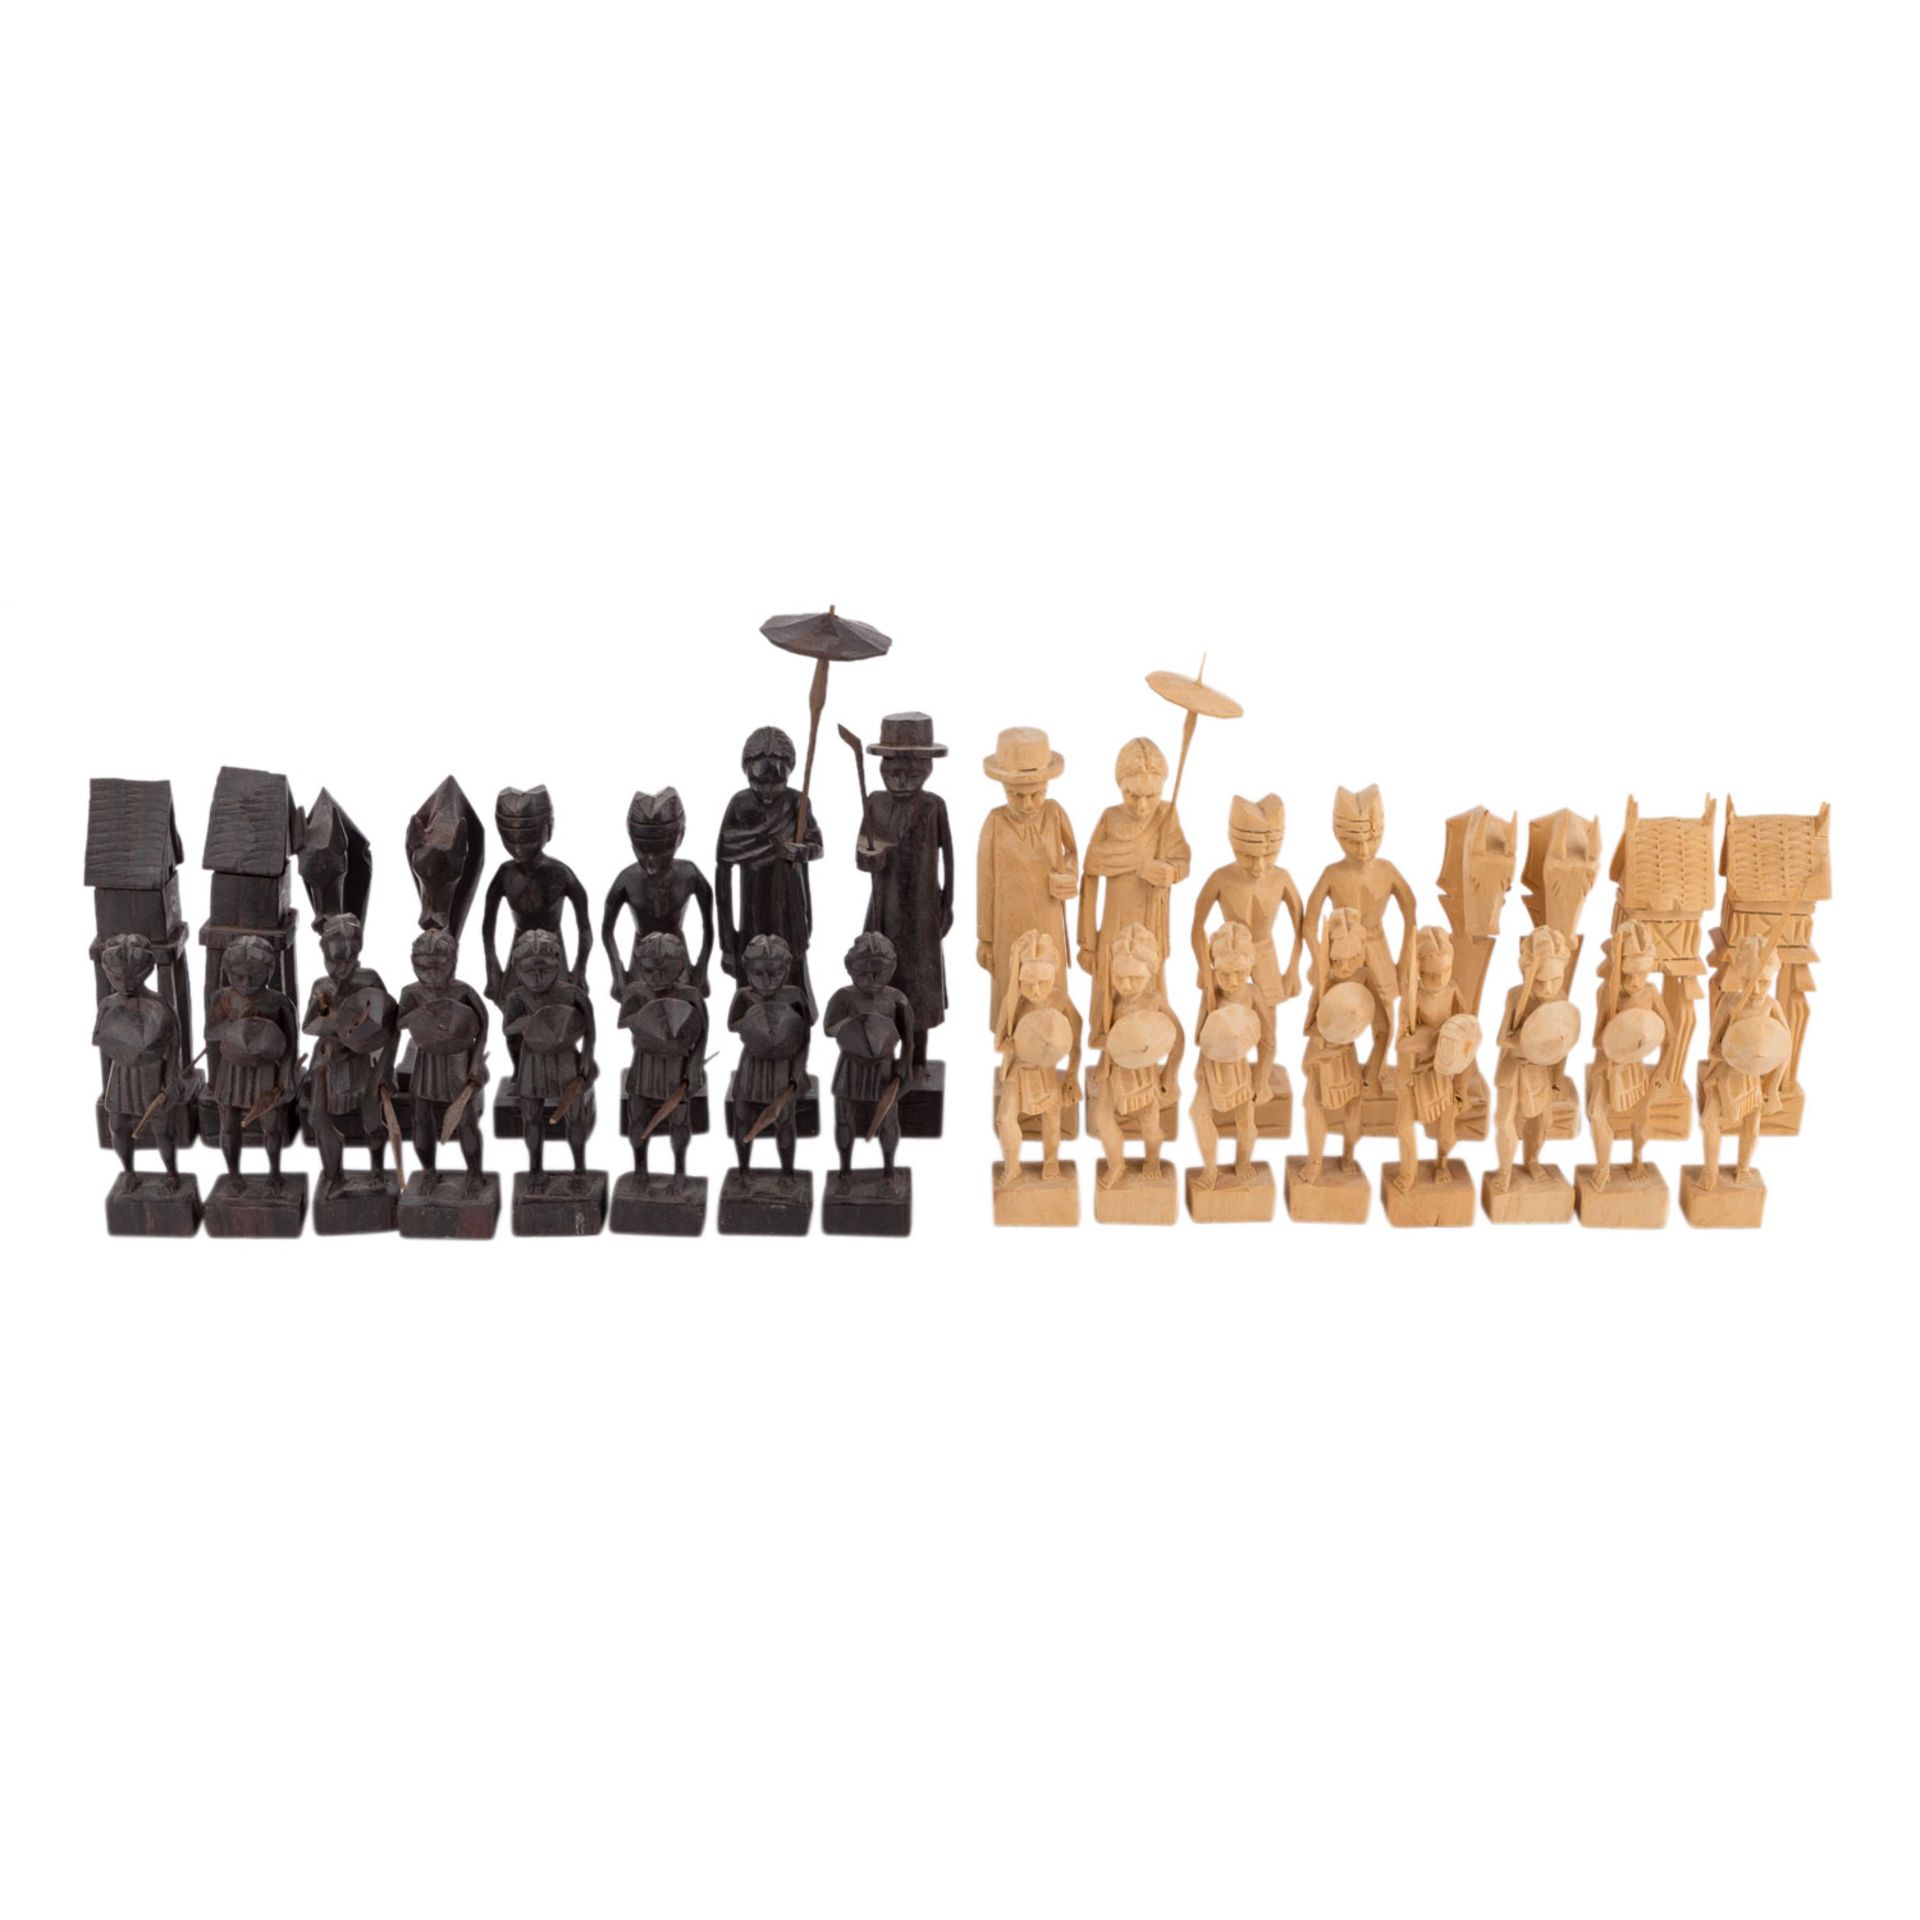 AFRIKANISCHER SCHACHFIGURENSATZGeschnitzte Figuren aus Eben- bzw. Tropenholz. Figurenhöhe bis 15 cm.